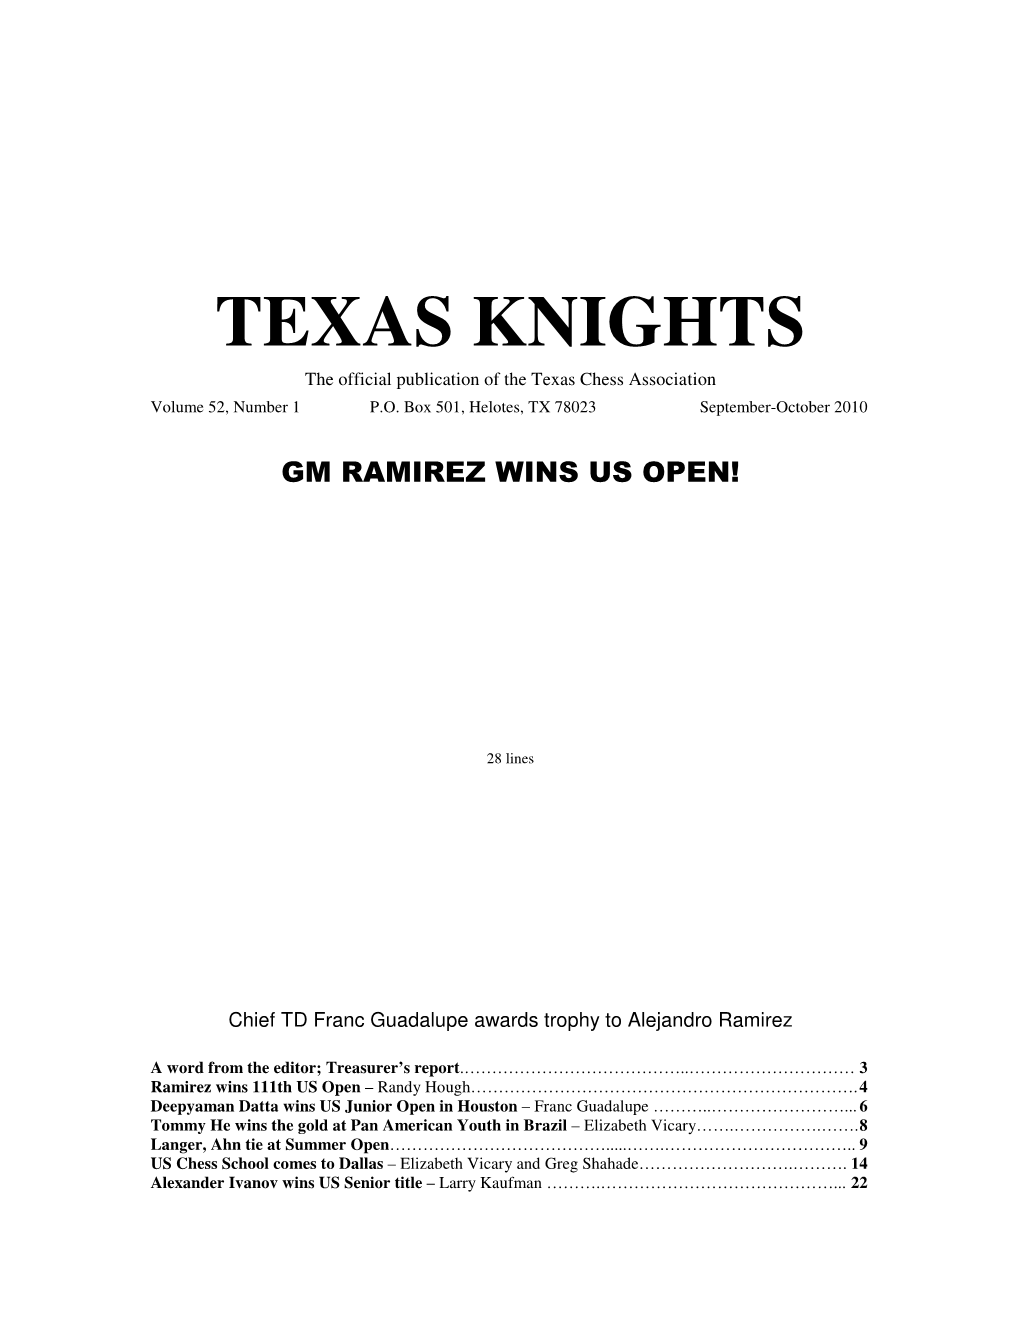 Texas Knights